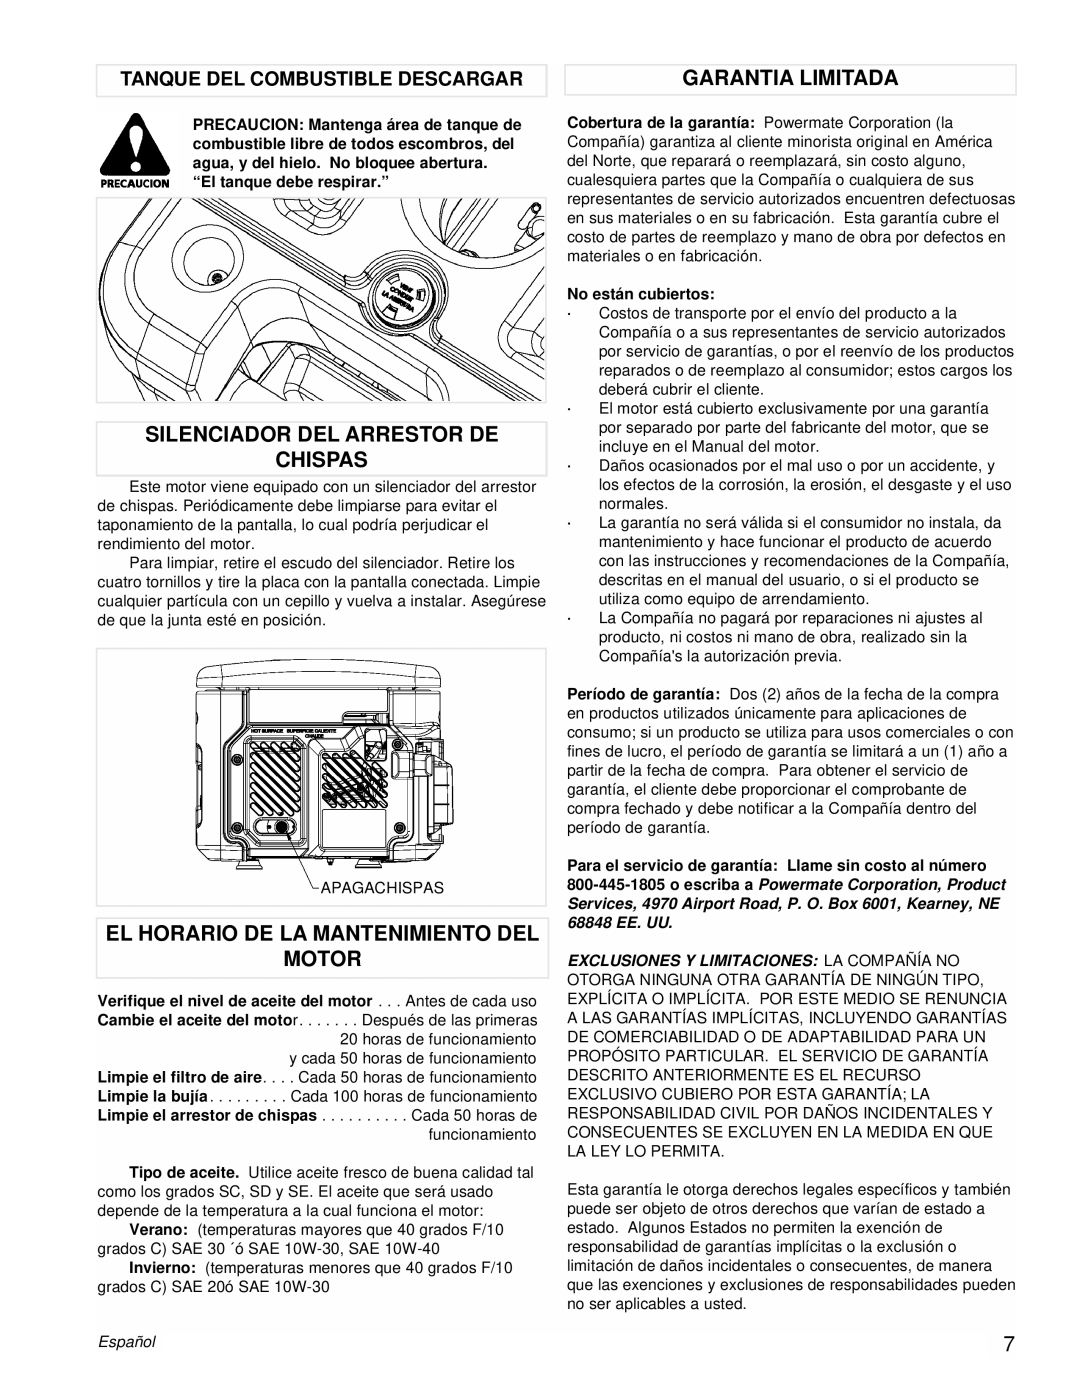 Powermate PM0431802 manual Silenciador Del Arrestor De Chispas, El Horario De La Mantenimiento Del Motor, Garantia Limitada 